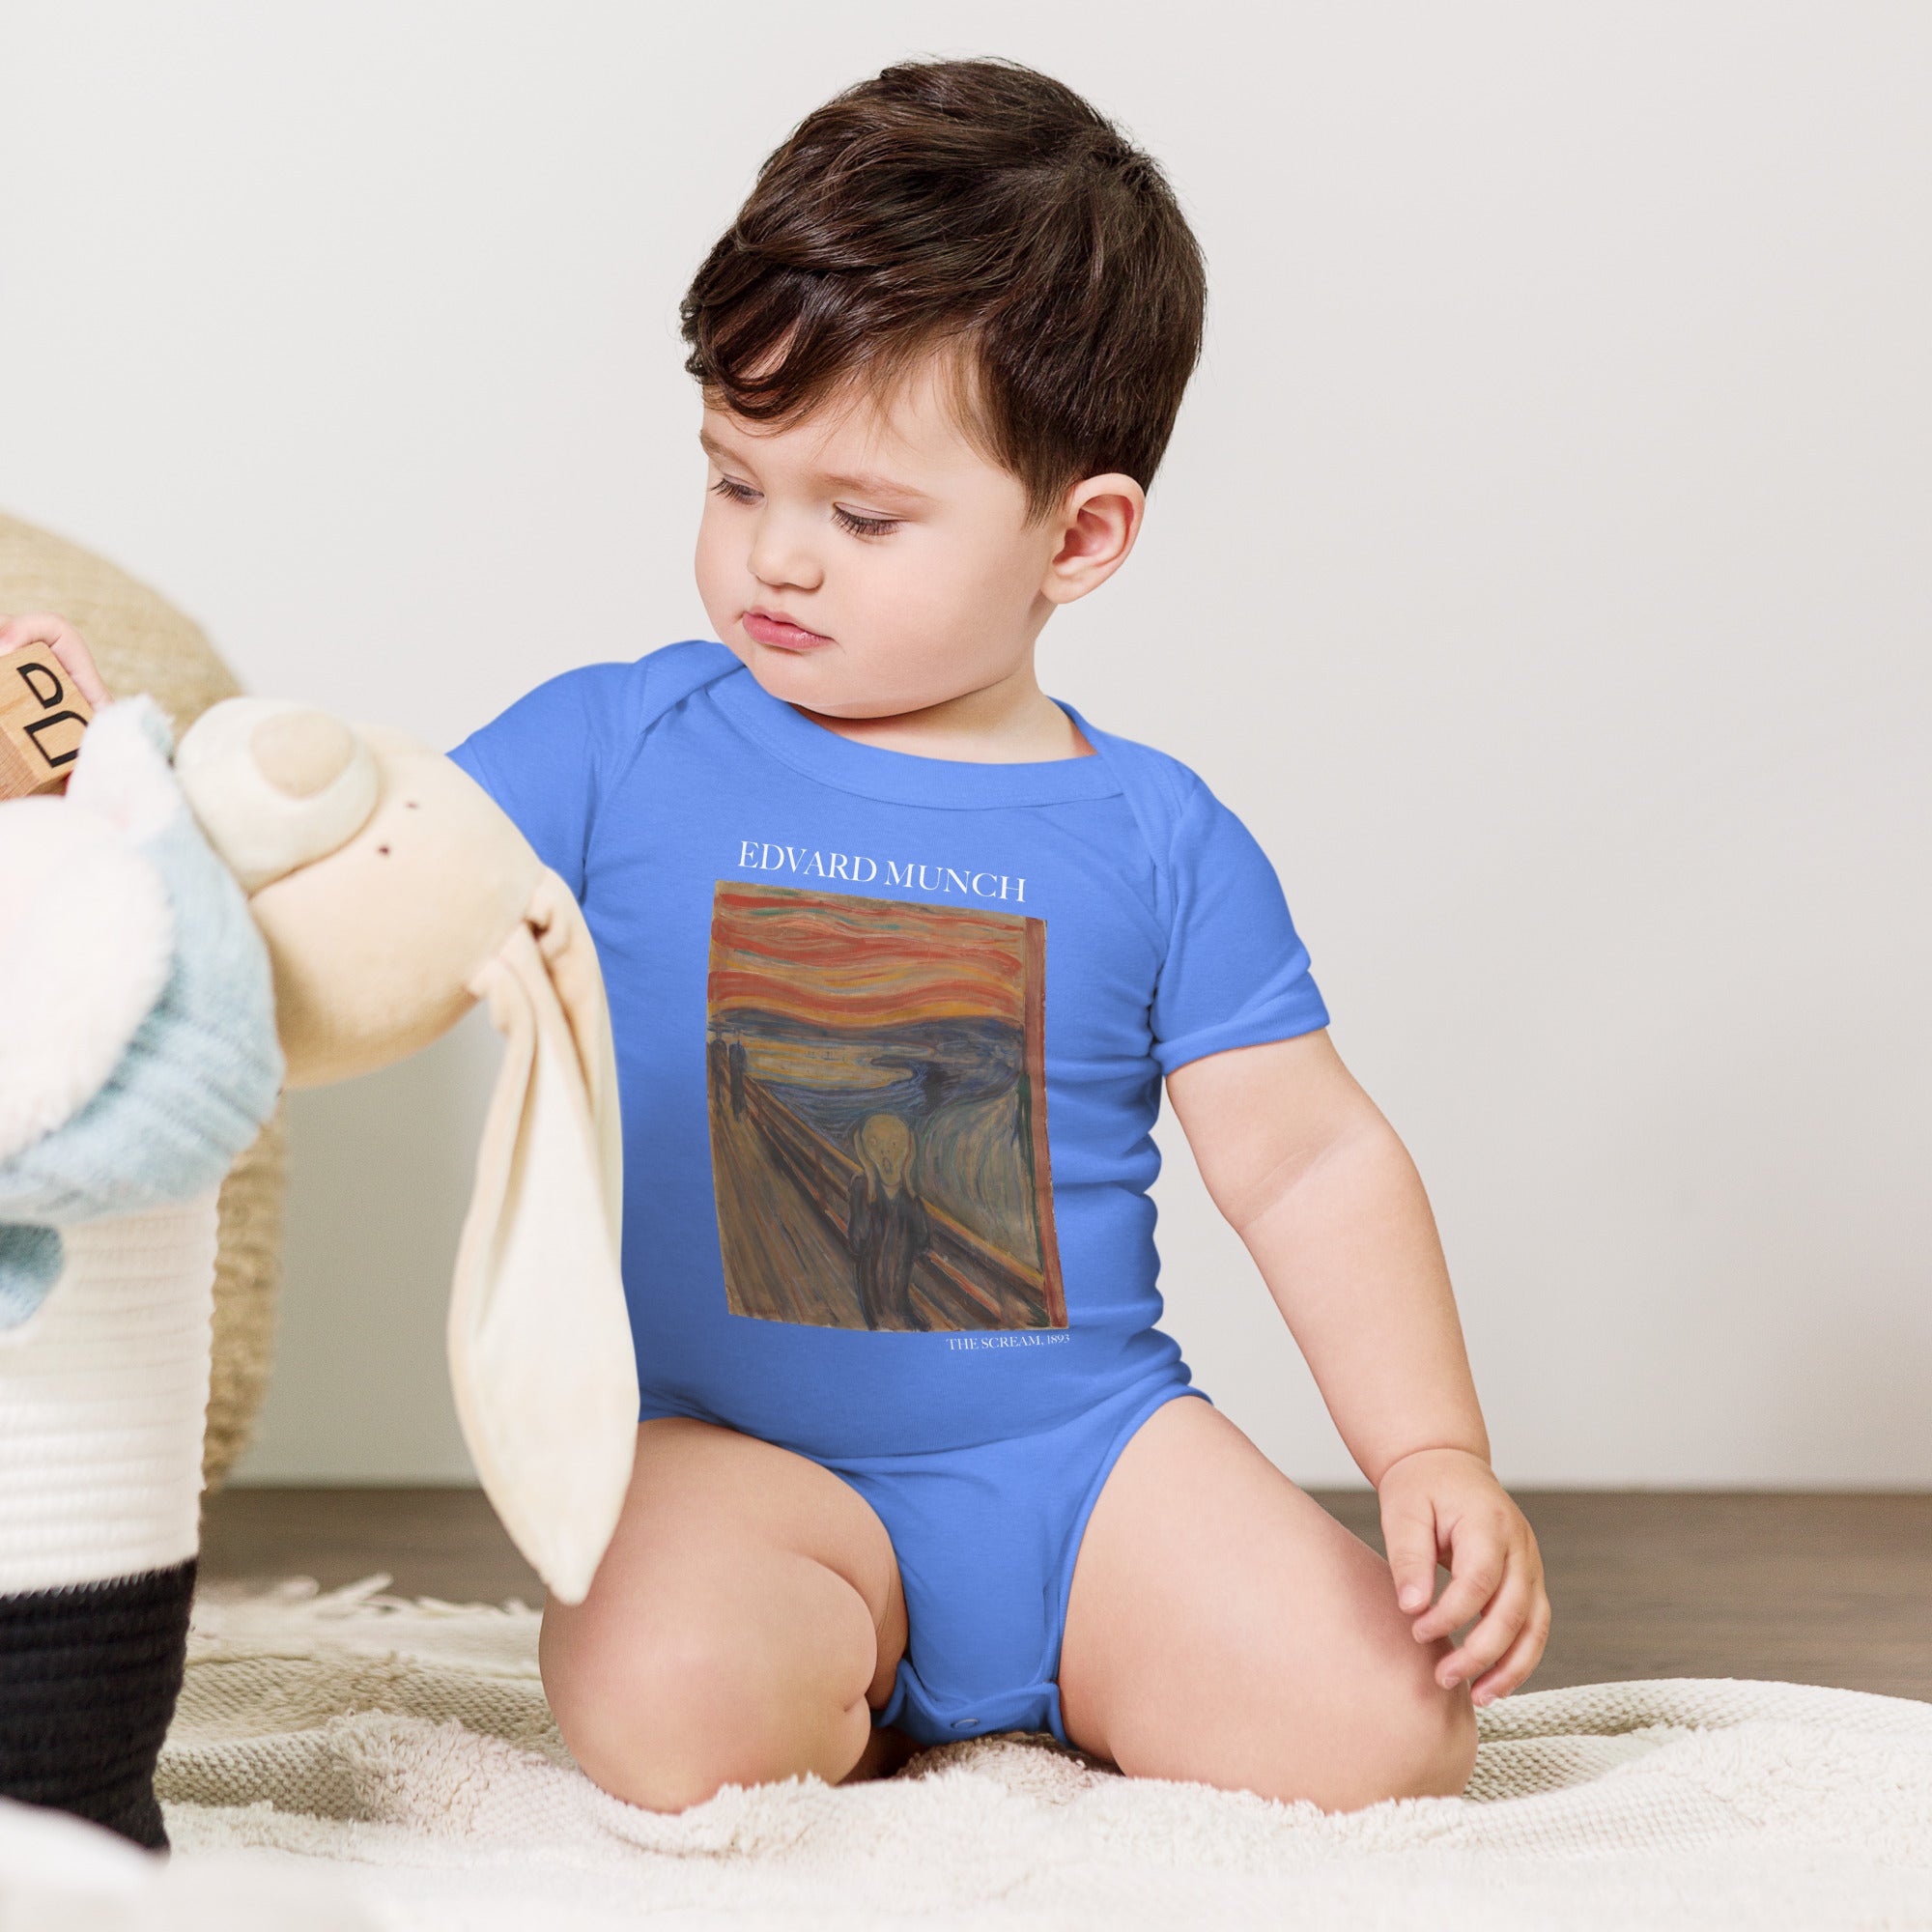 Kurzärmliger Einteiler „Der Schrei“ von Edvard Munch, berühmtes Gemälde | Premium Baby Art Einärmliger